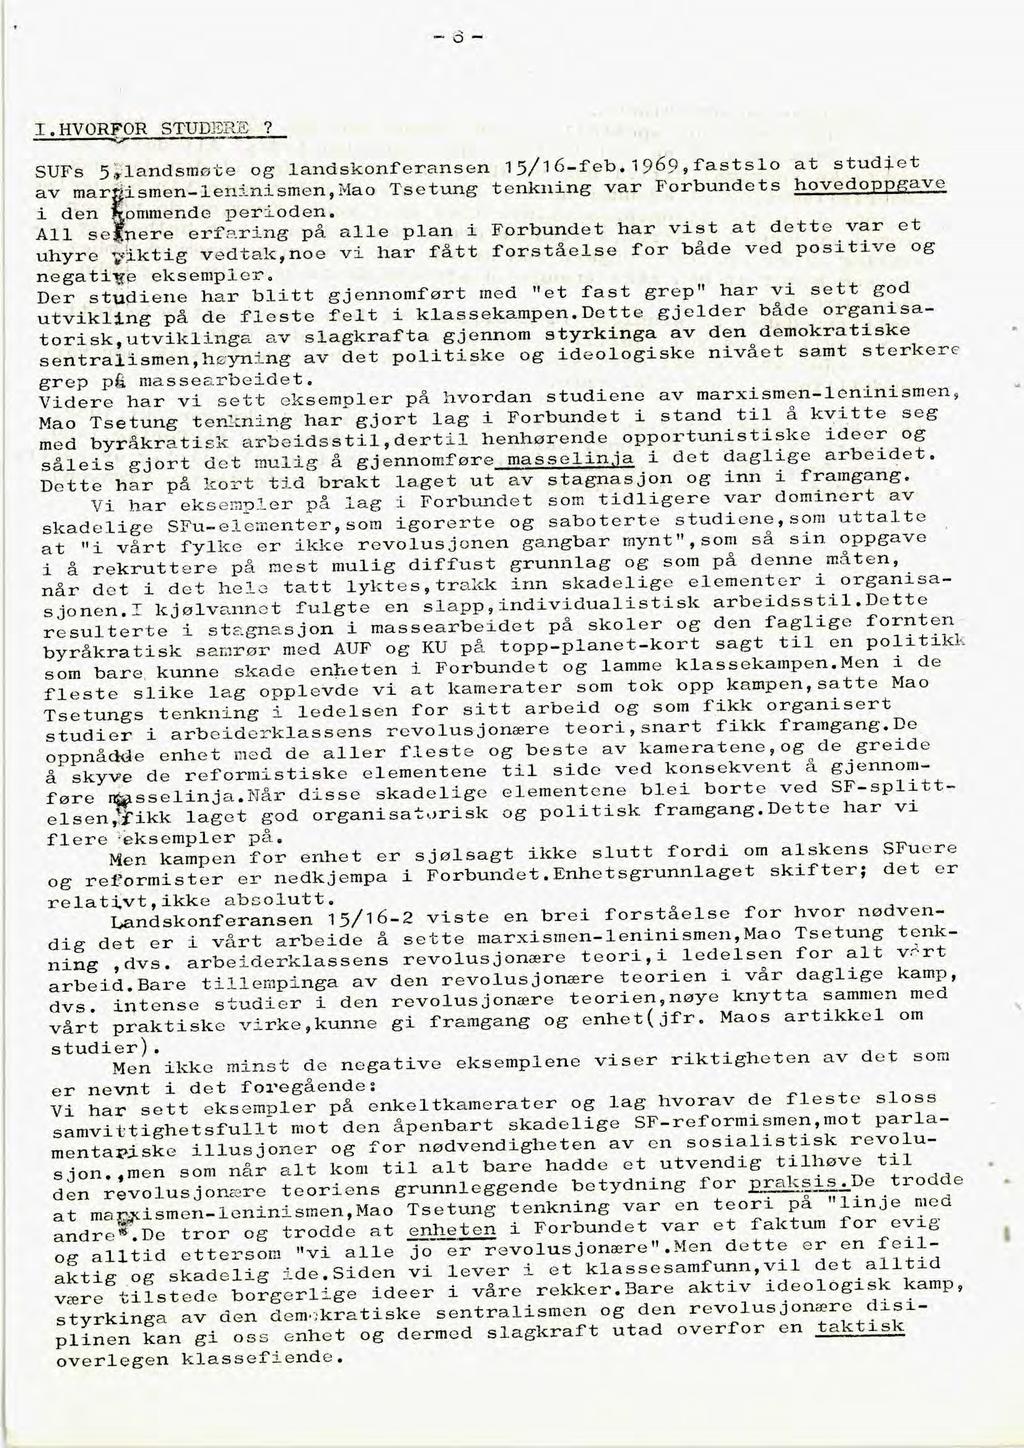 I.HVORFOR STUDERE? SUFs 5;landsmøte og landskonferansen 15/16-feb.1969,fastslo at studiet av mar 'ismen-leninismen,mao Tsetung tenkning var Forbundets hovedoppgave i den ommende perioden.